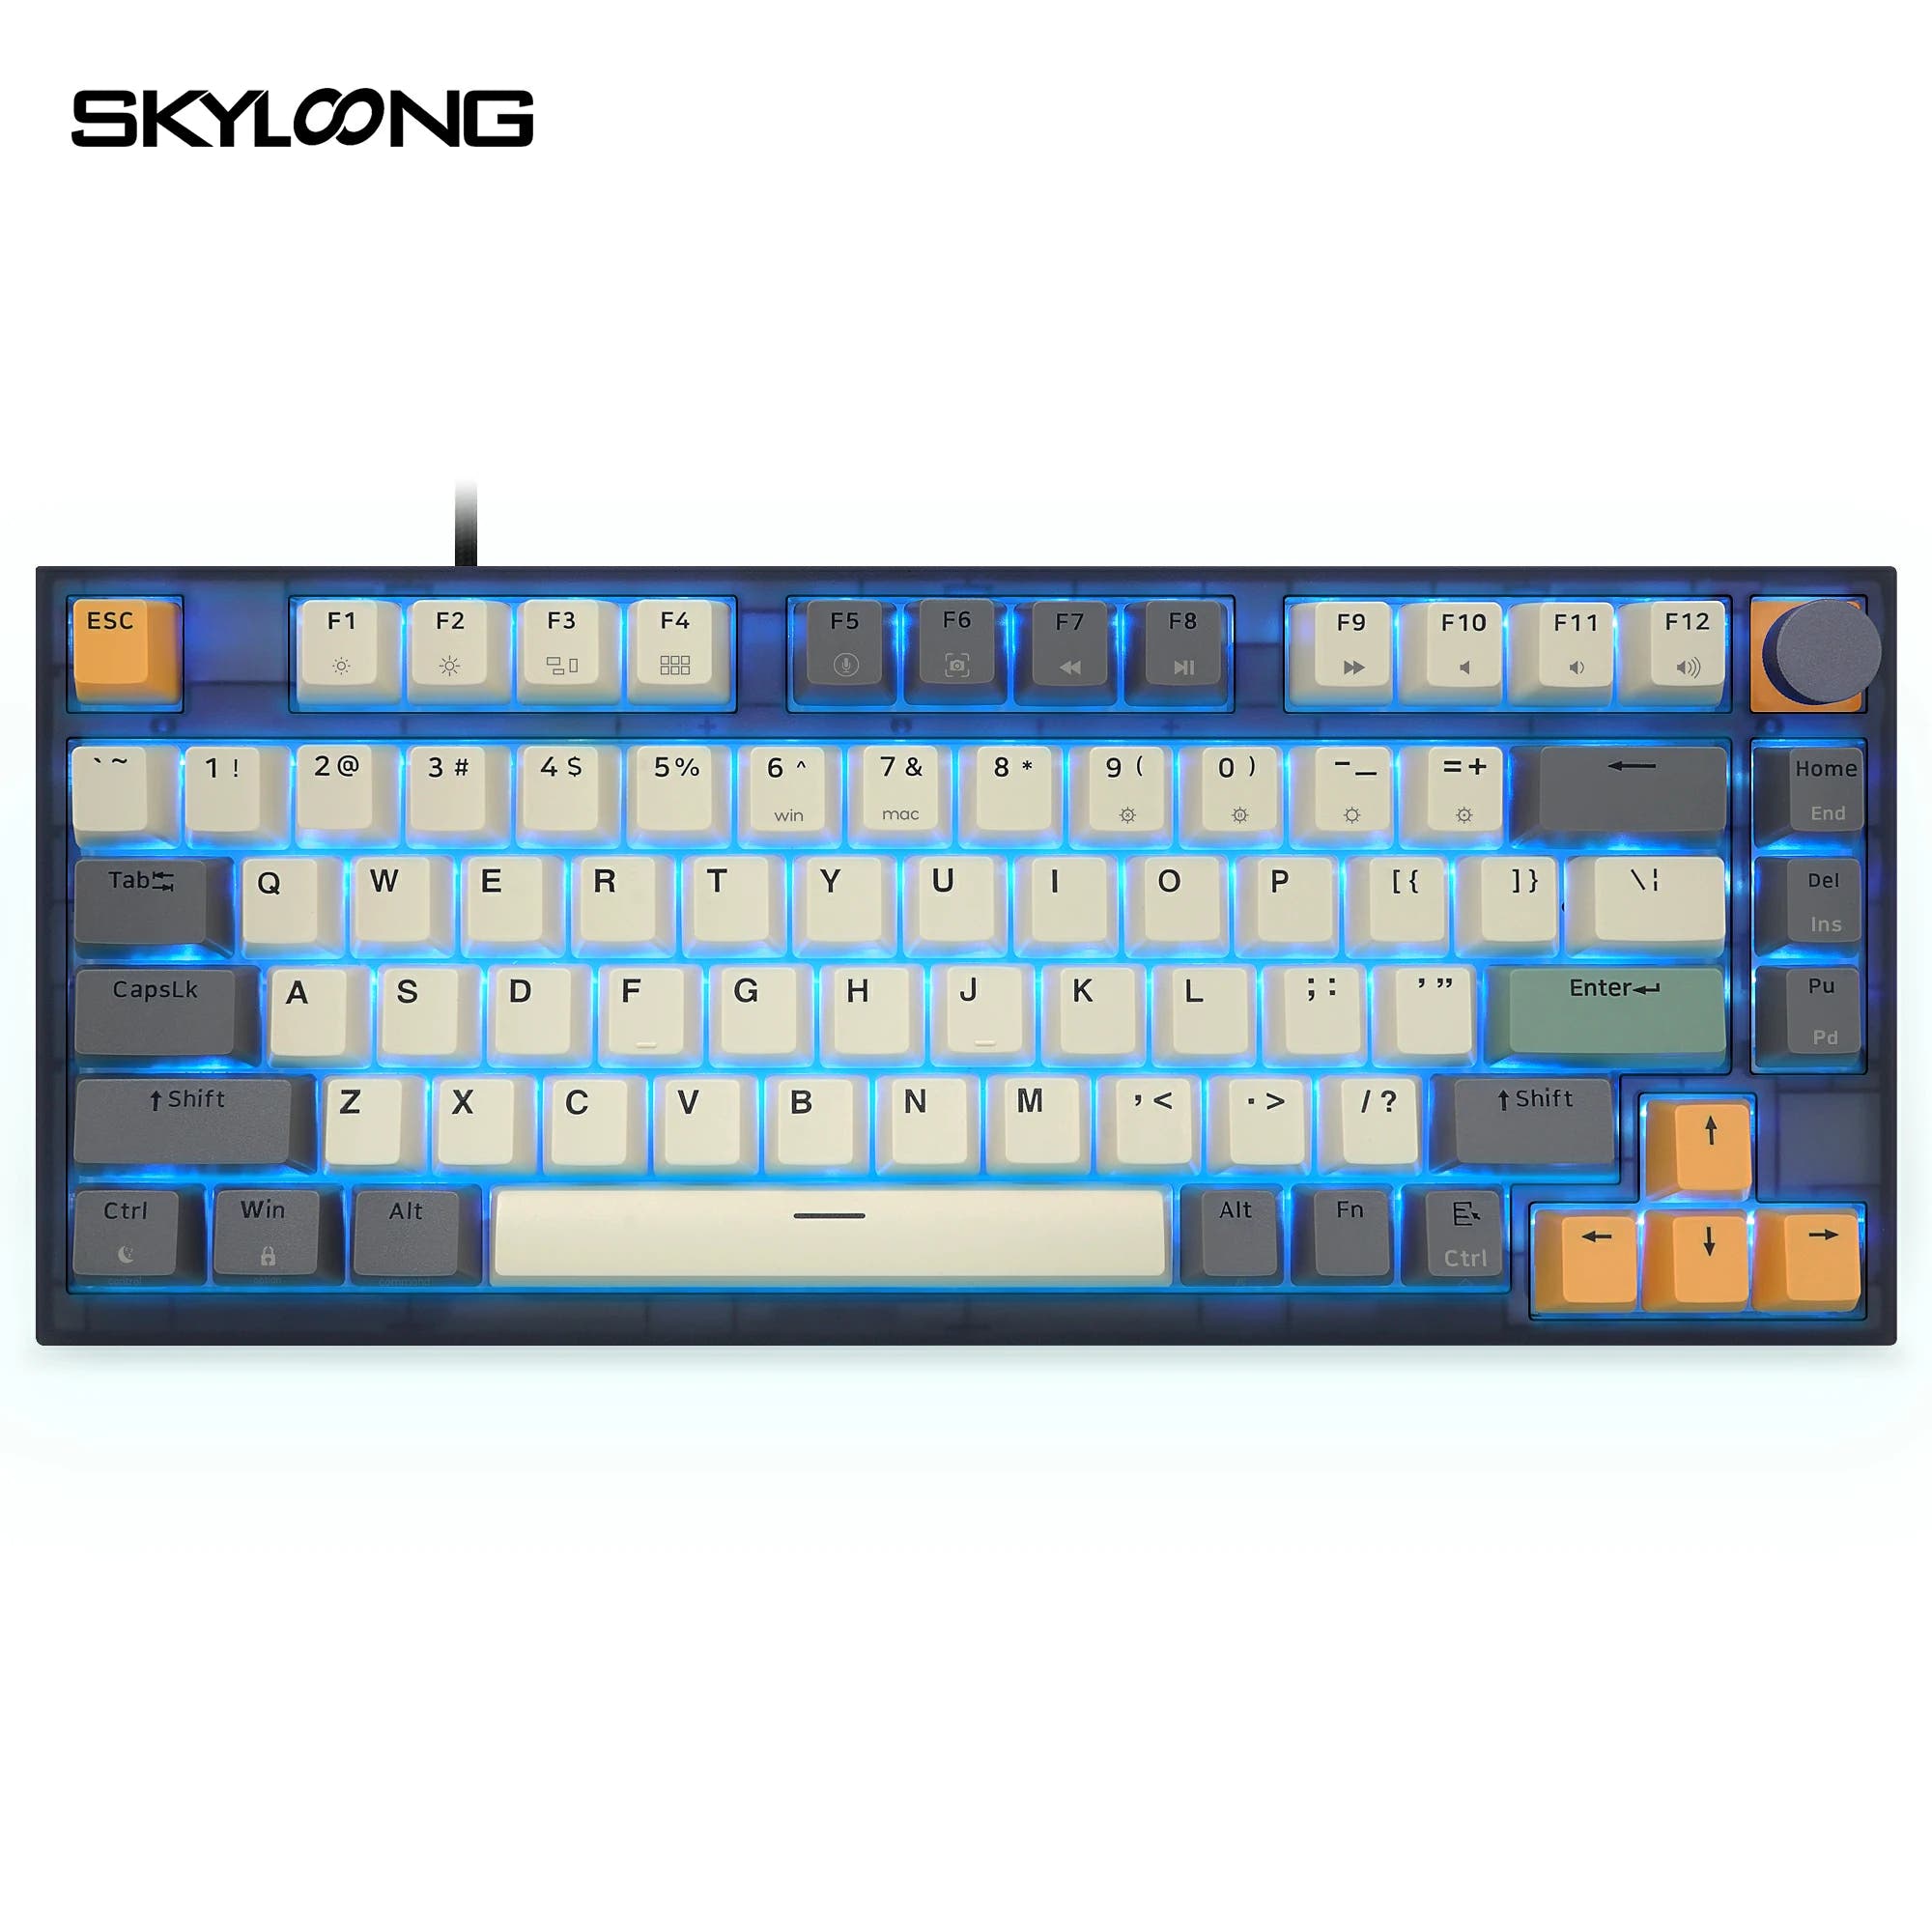 SKYLOONG GK75 Knob Keyboard - TiGrey (Optical) Type-C / White Light / Optical Red